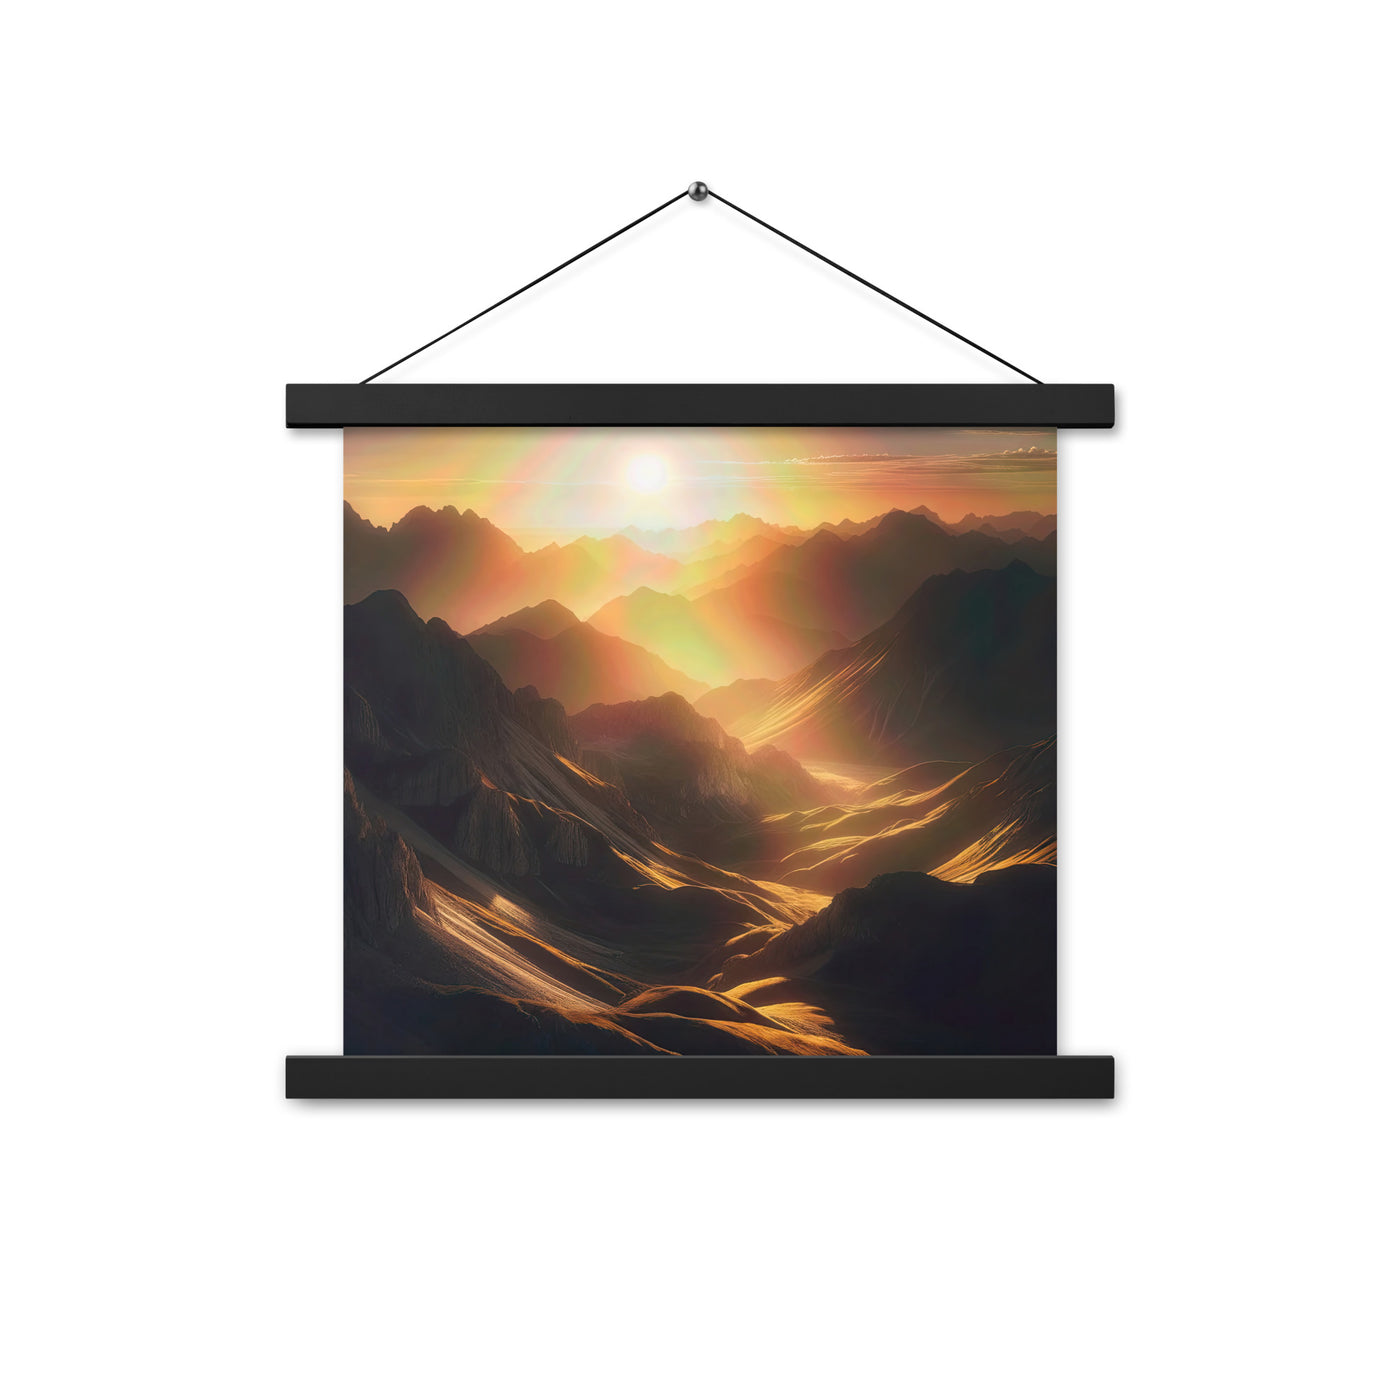 Foto der goldenen Stunde in den Bergen mit warmem Schein über zerklüftetem Gelände - Premium Poster mit Aufhängung berge xxx yyy zzz 35.6 x 35.6 cm